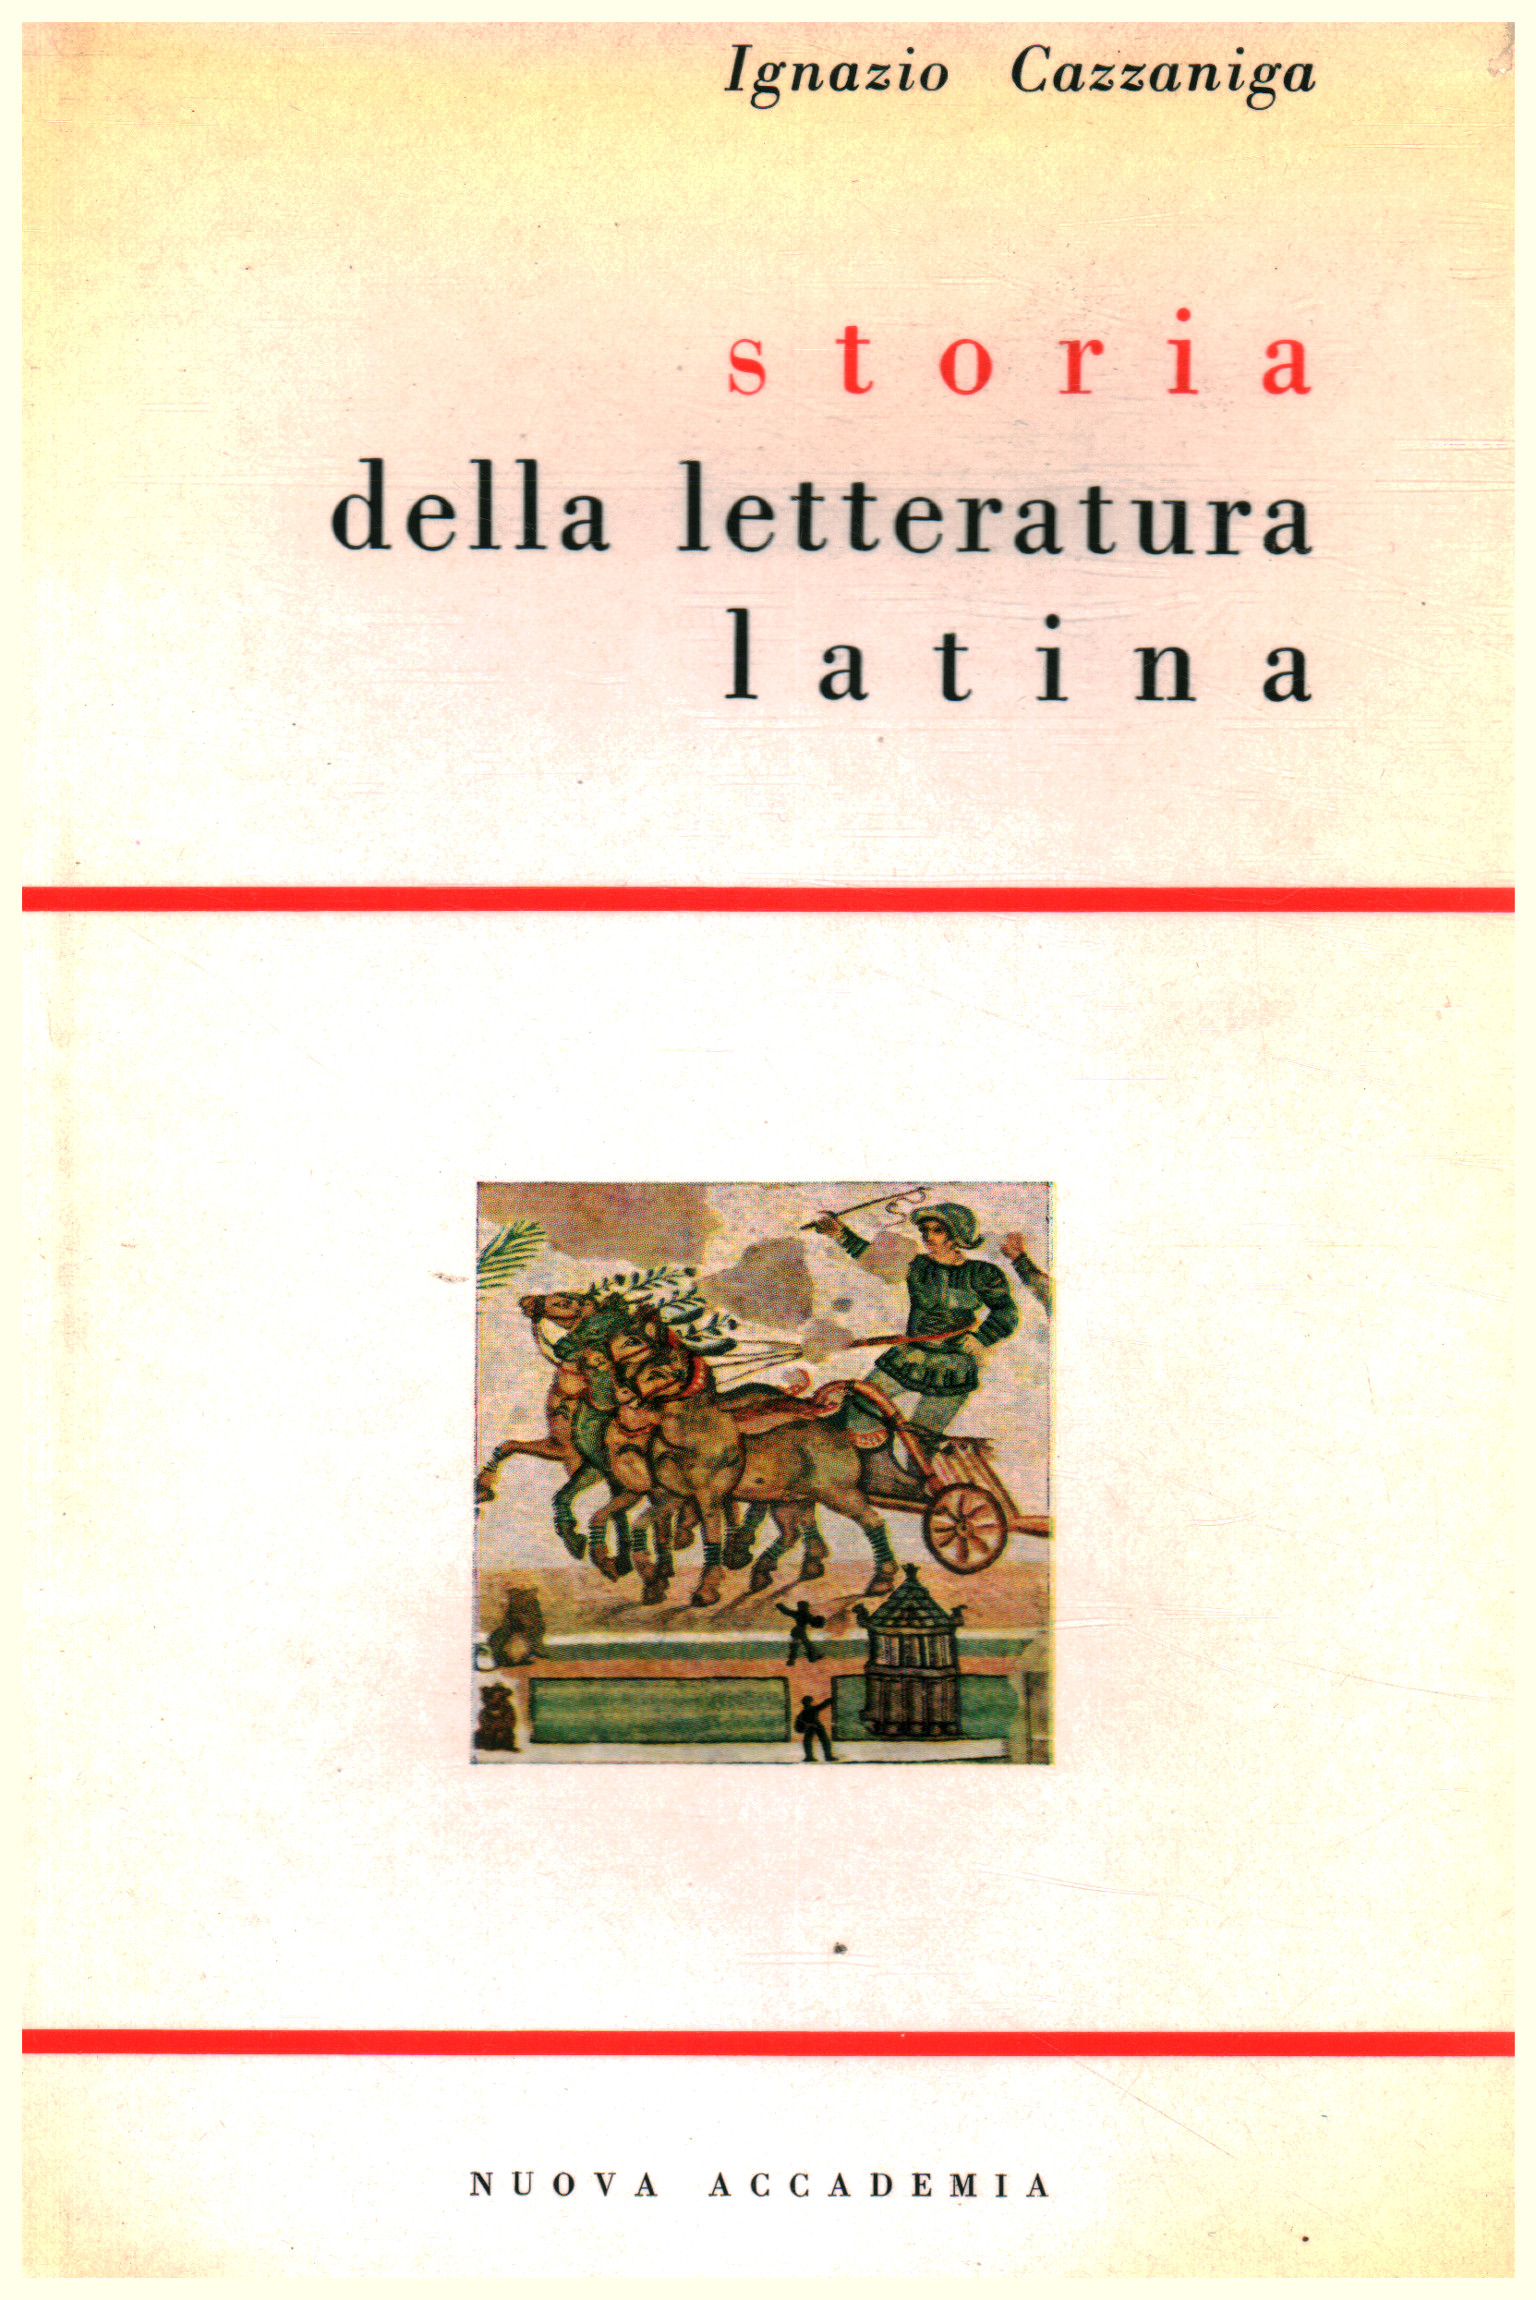 History of Latin literature, Ignazio Cazzaniga